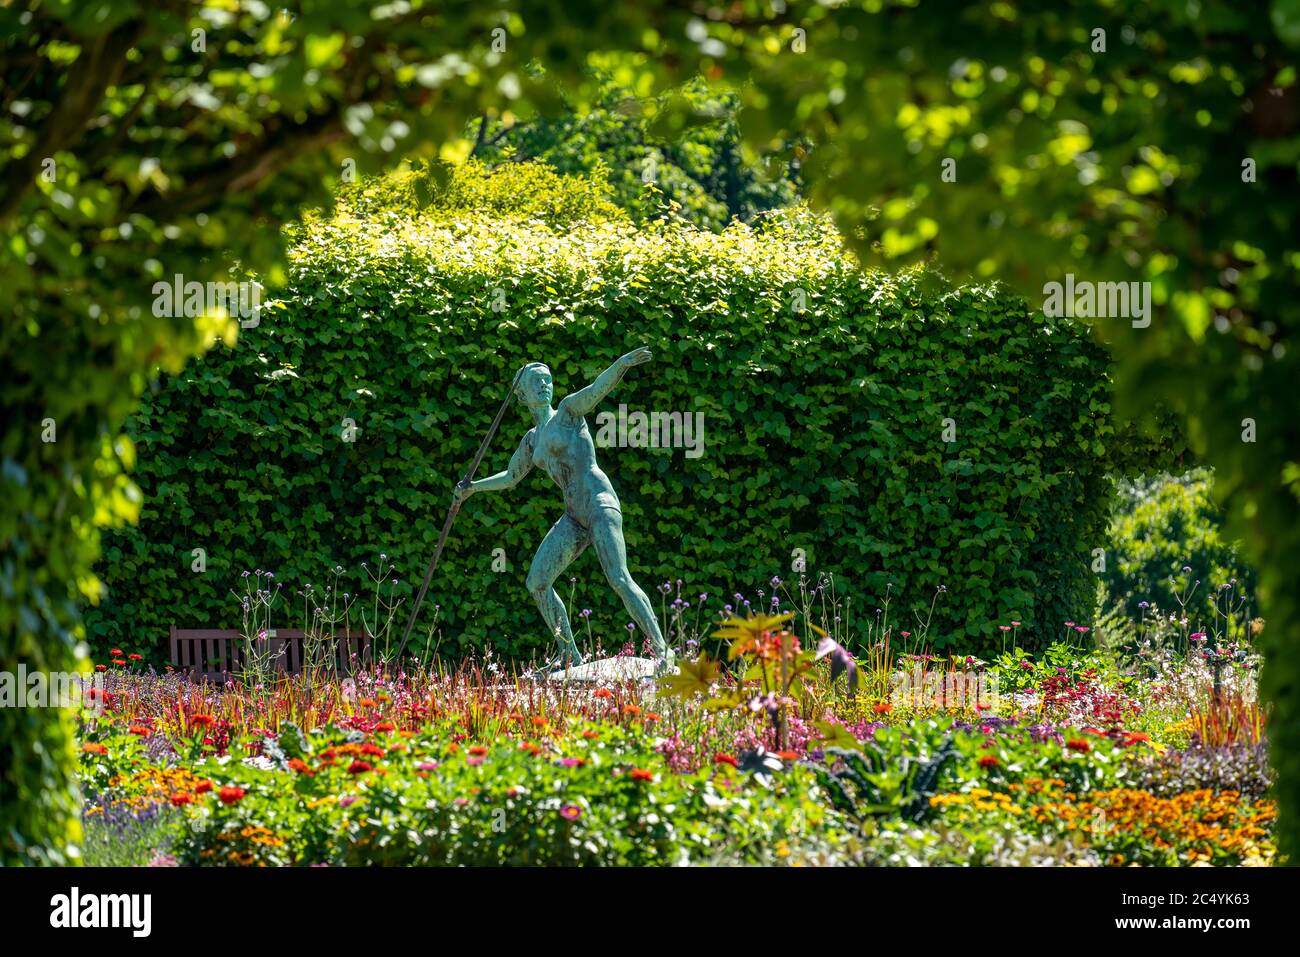 Der Grugapark, Essen, Botanischer Garten, Park für Freizeit und Erholung, Kunstwerk Javelin Werfer 1937, in Lindenrund, NRW, Deutschland Stockfoto